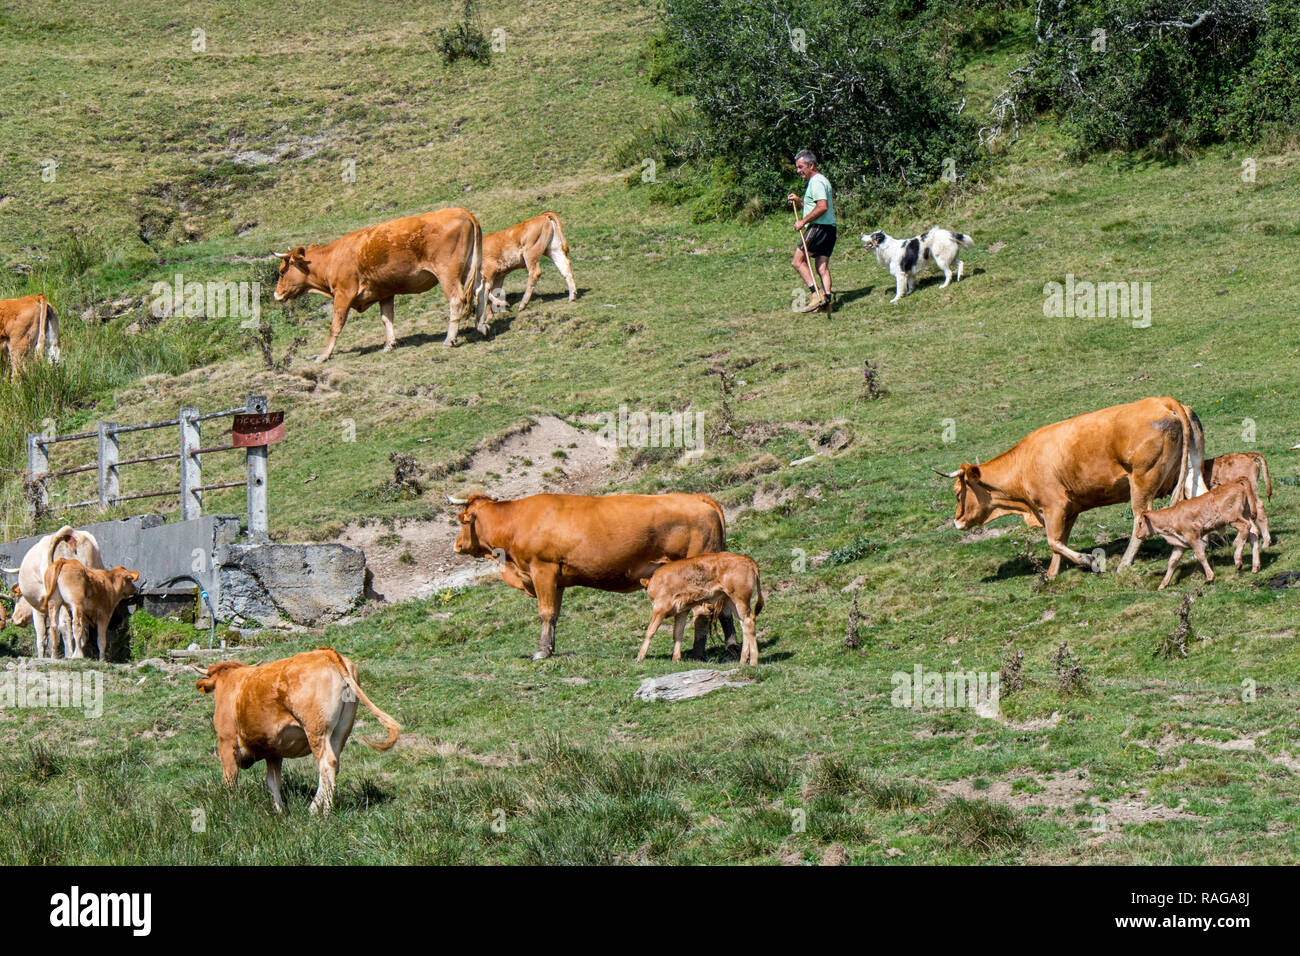 Éleveur / vacher / avec l'élevage de chiens Berger des troupeaux de bovins Limousin en pâturage dans les Pyrénées françaises, France Banque D'Images